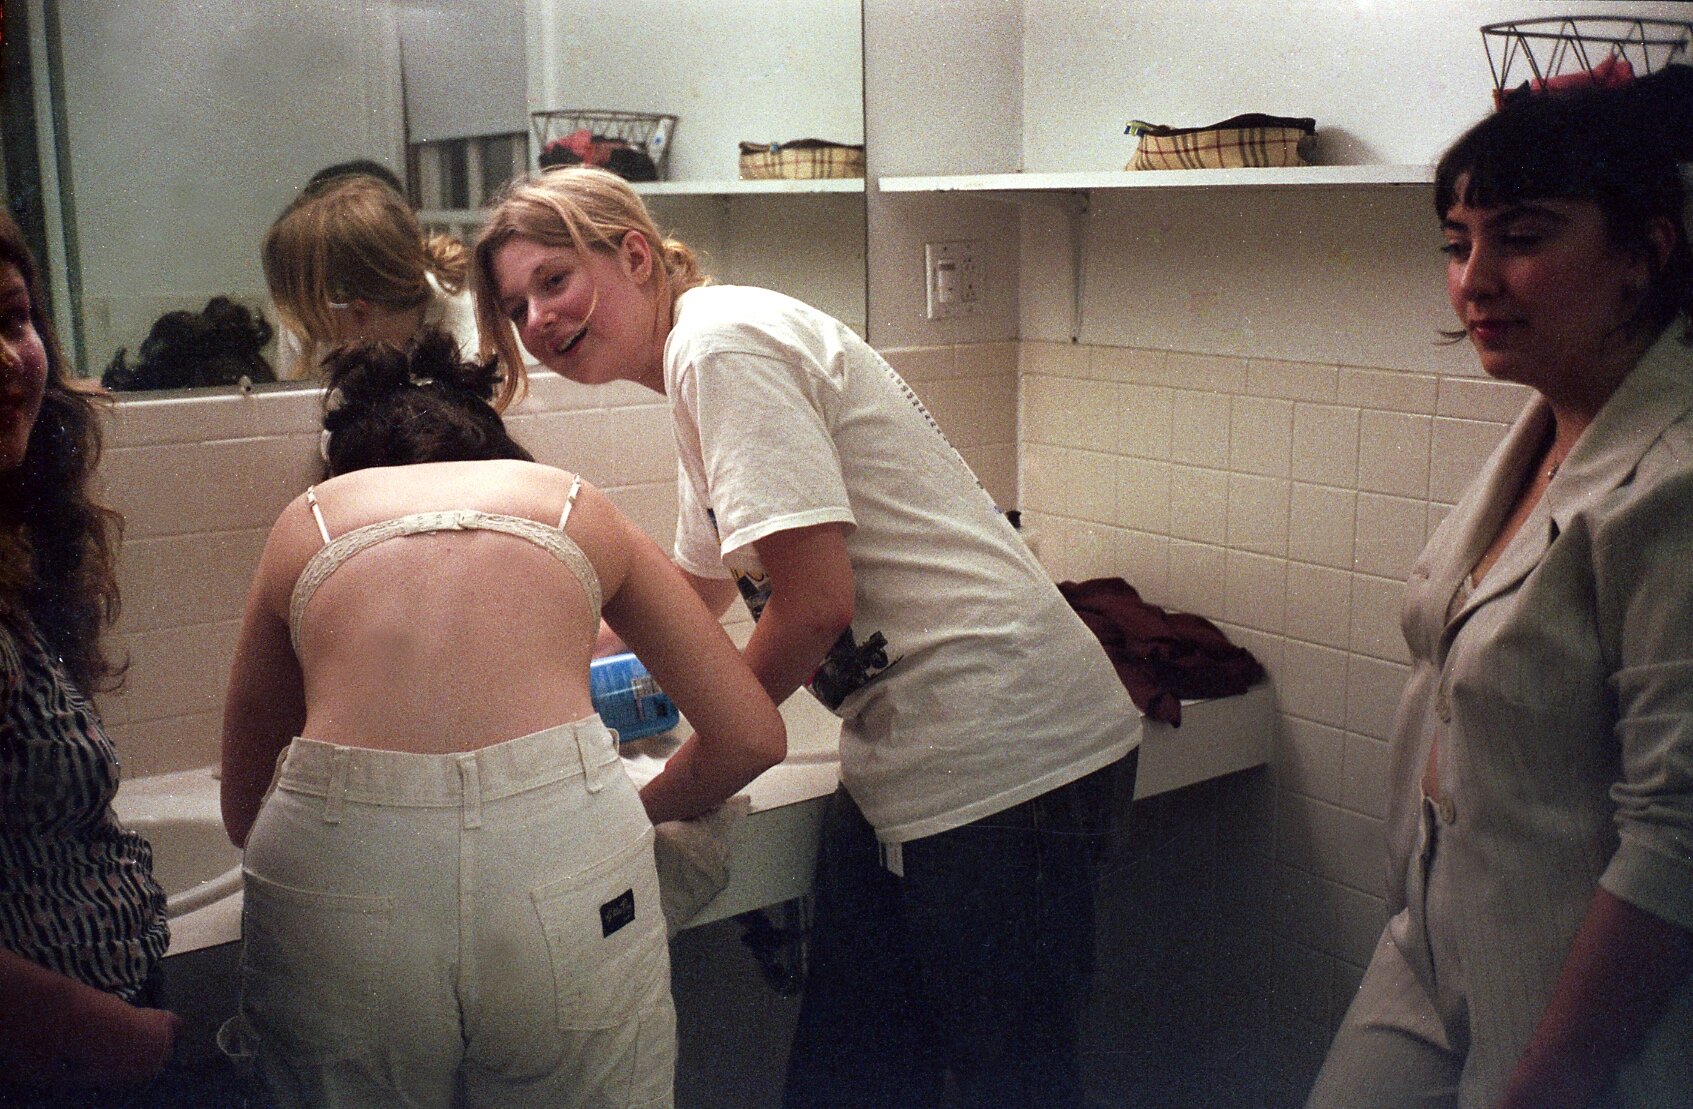   Girls in the bathroom, 2019.    © Cameron Schiller  